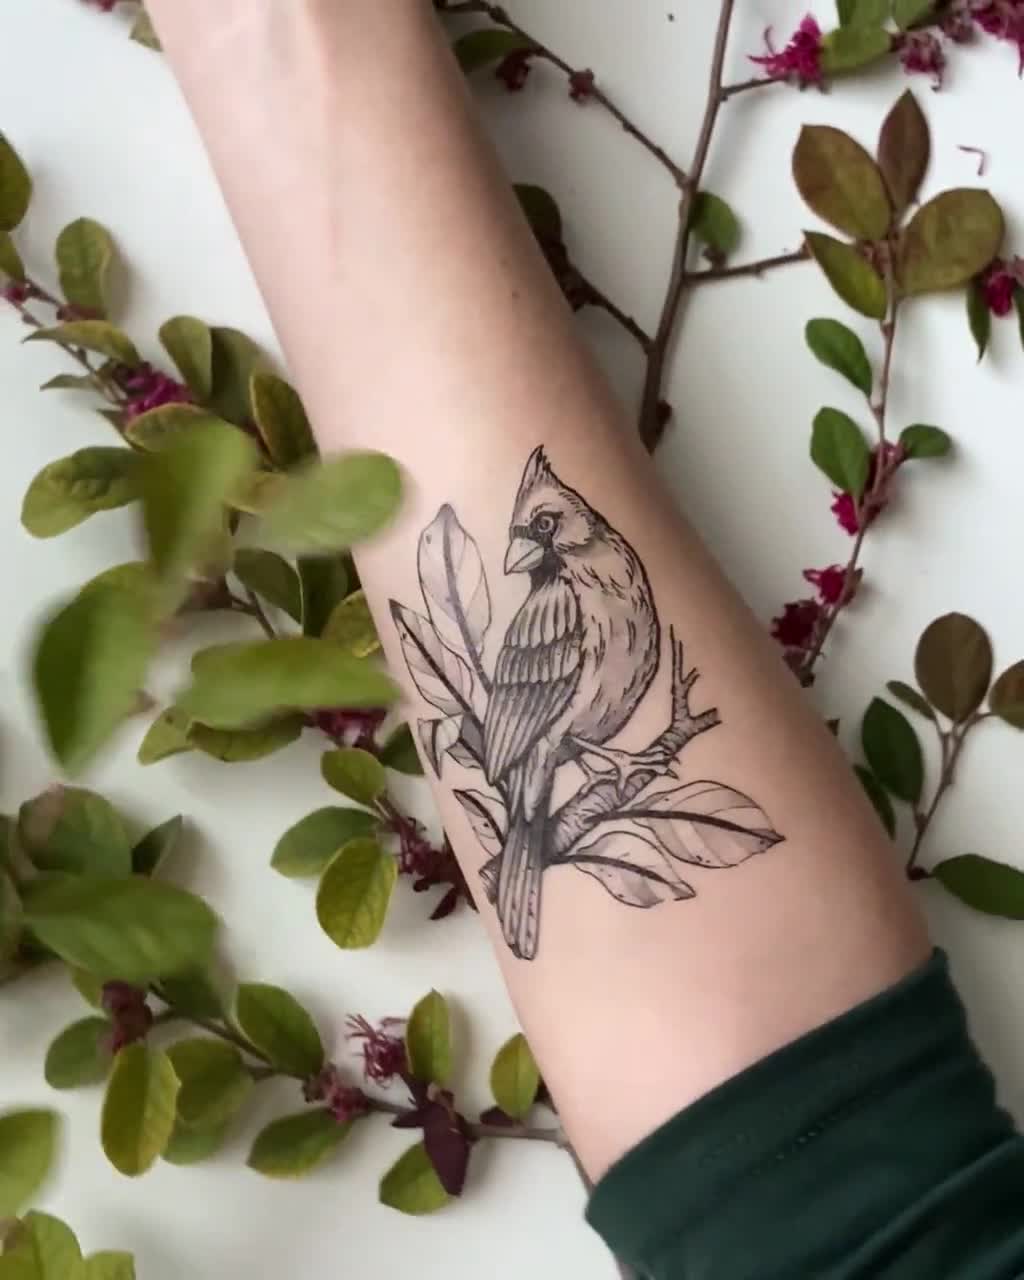 3 Sheet Sexy Body Arm Art Temporary Tattoo Sticker Women Men Colored Deer  Cat Bird Leaf Feature Design Tattoos #282056 - AliExpress